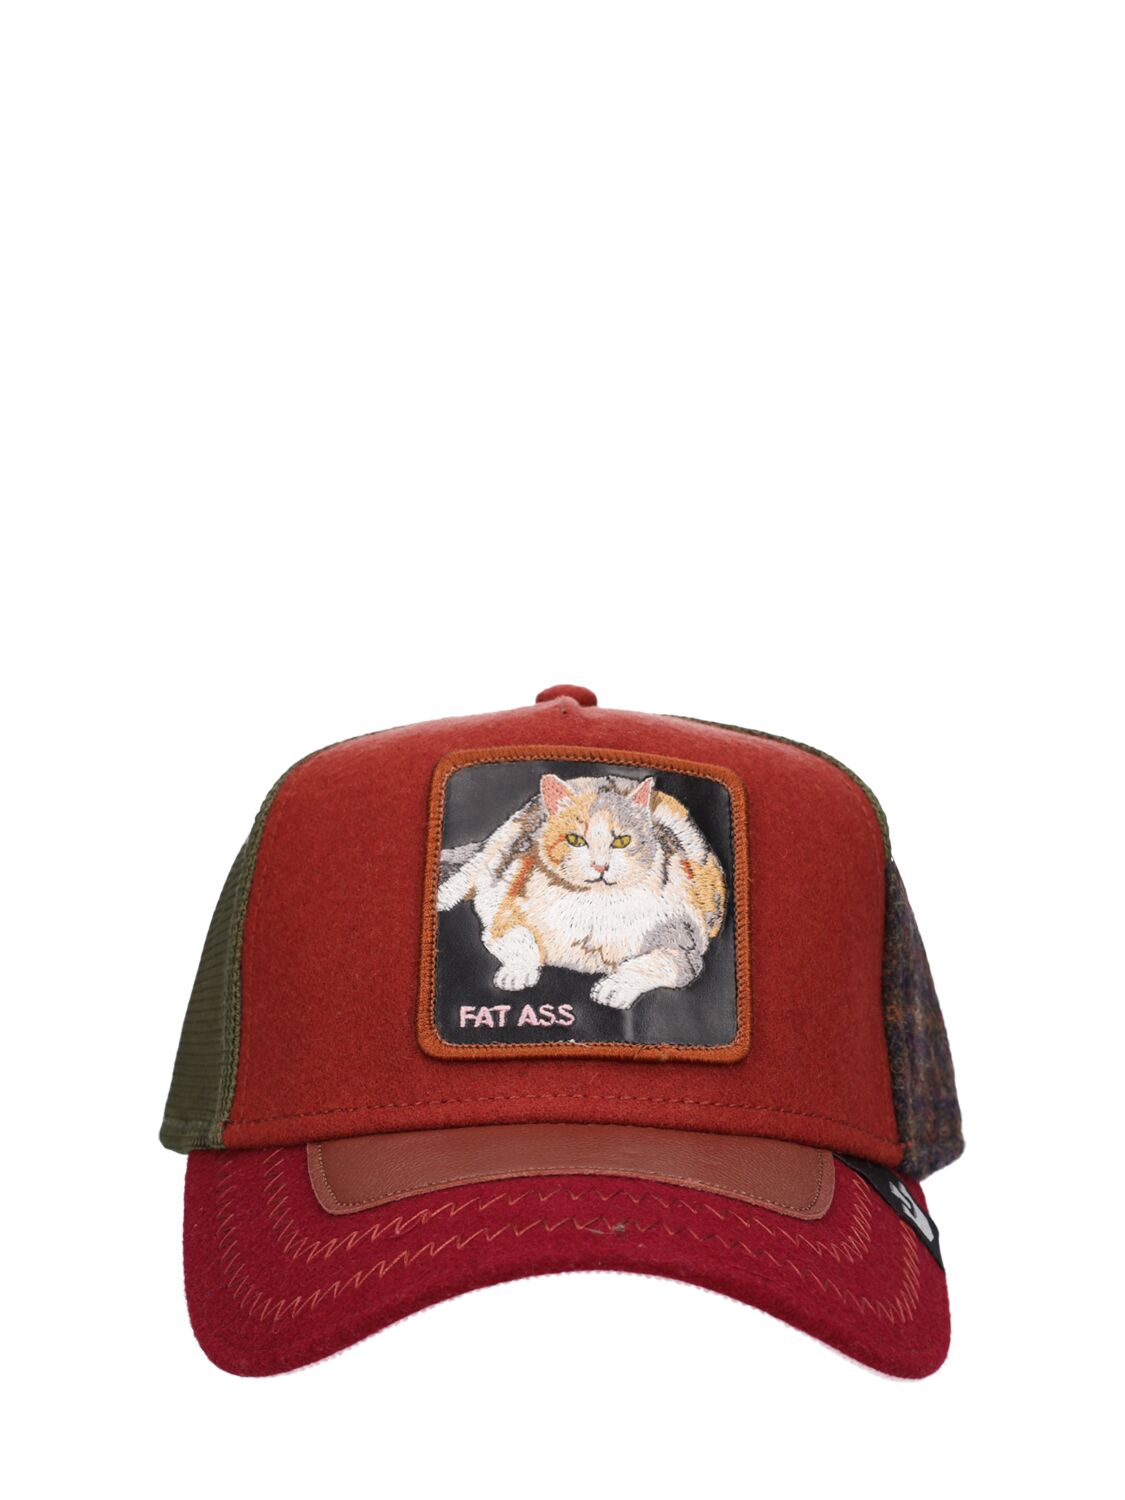 Image of Freshman Fifteen Trucker Hat